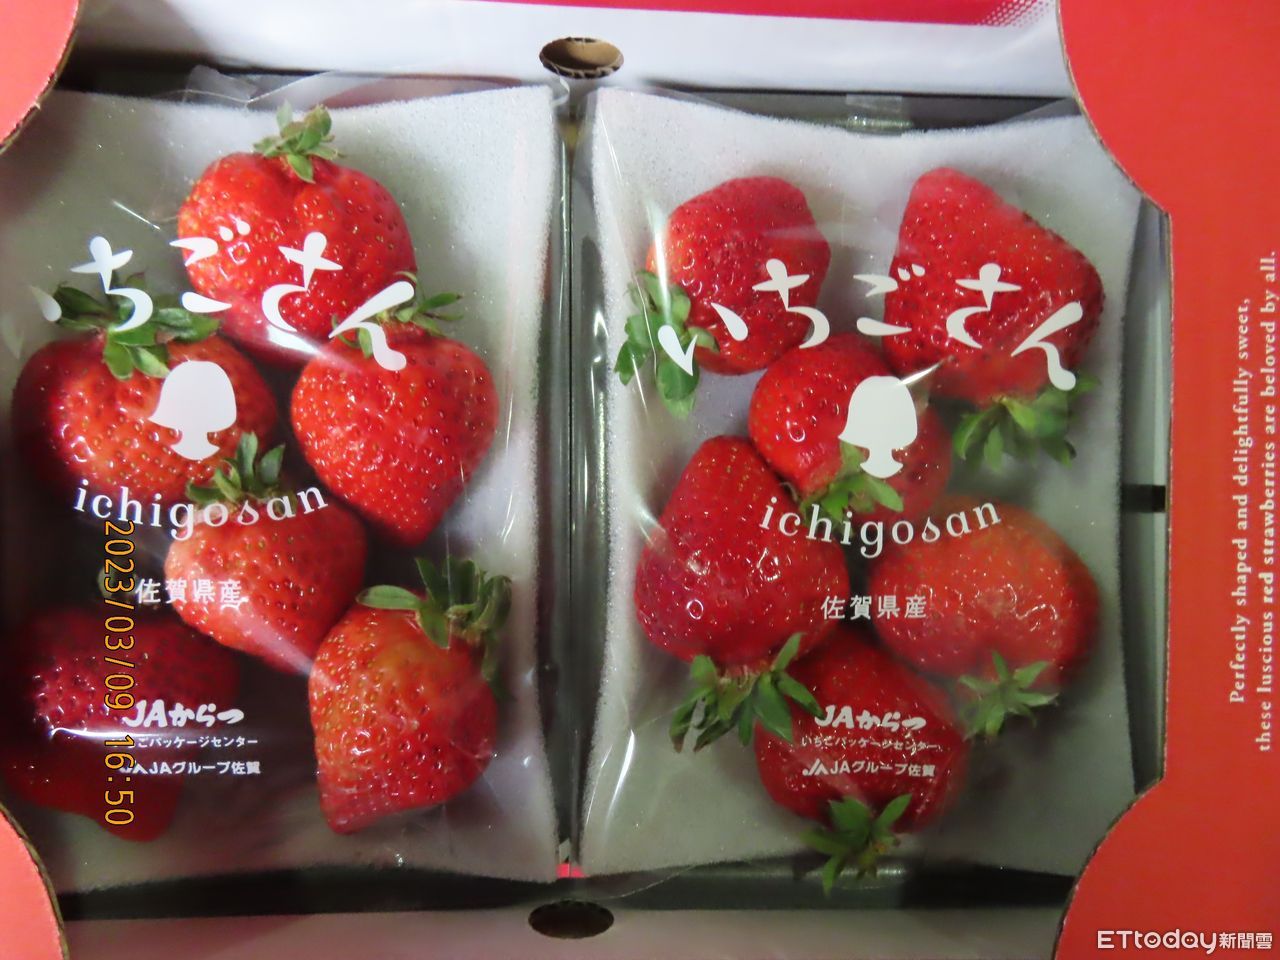 將為日本草莓農藥解套　柯志恩轟食藥署「被施壓還默不吭聲」 | ETtod